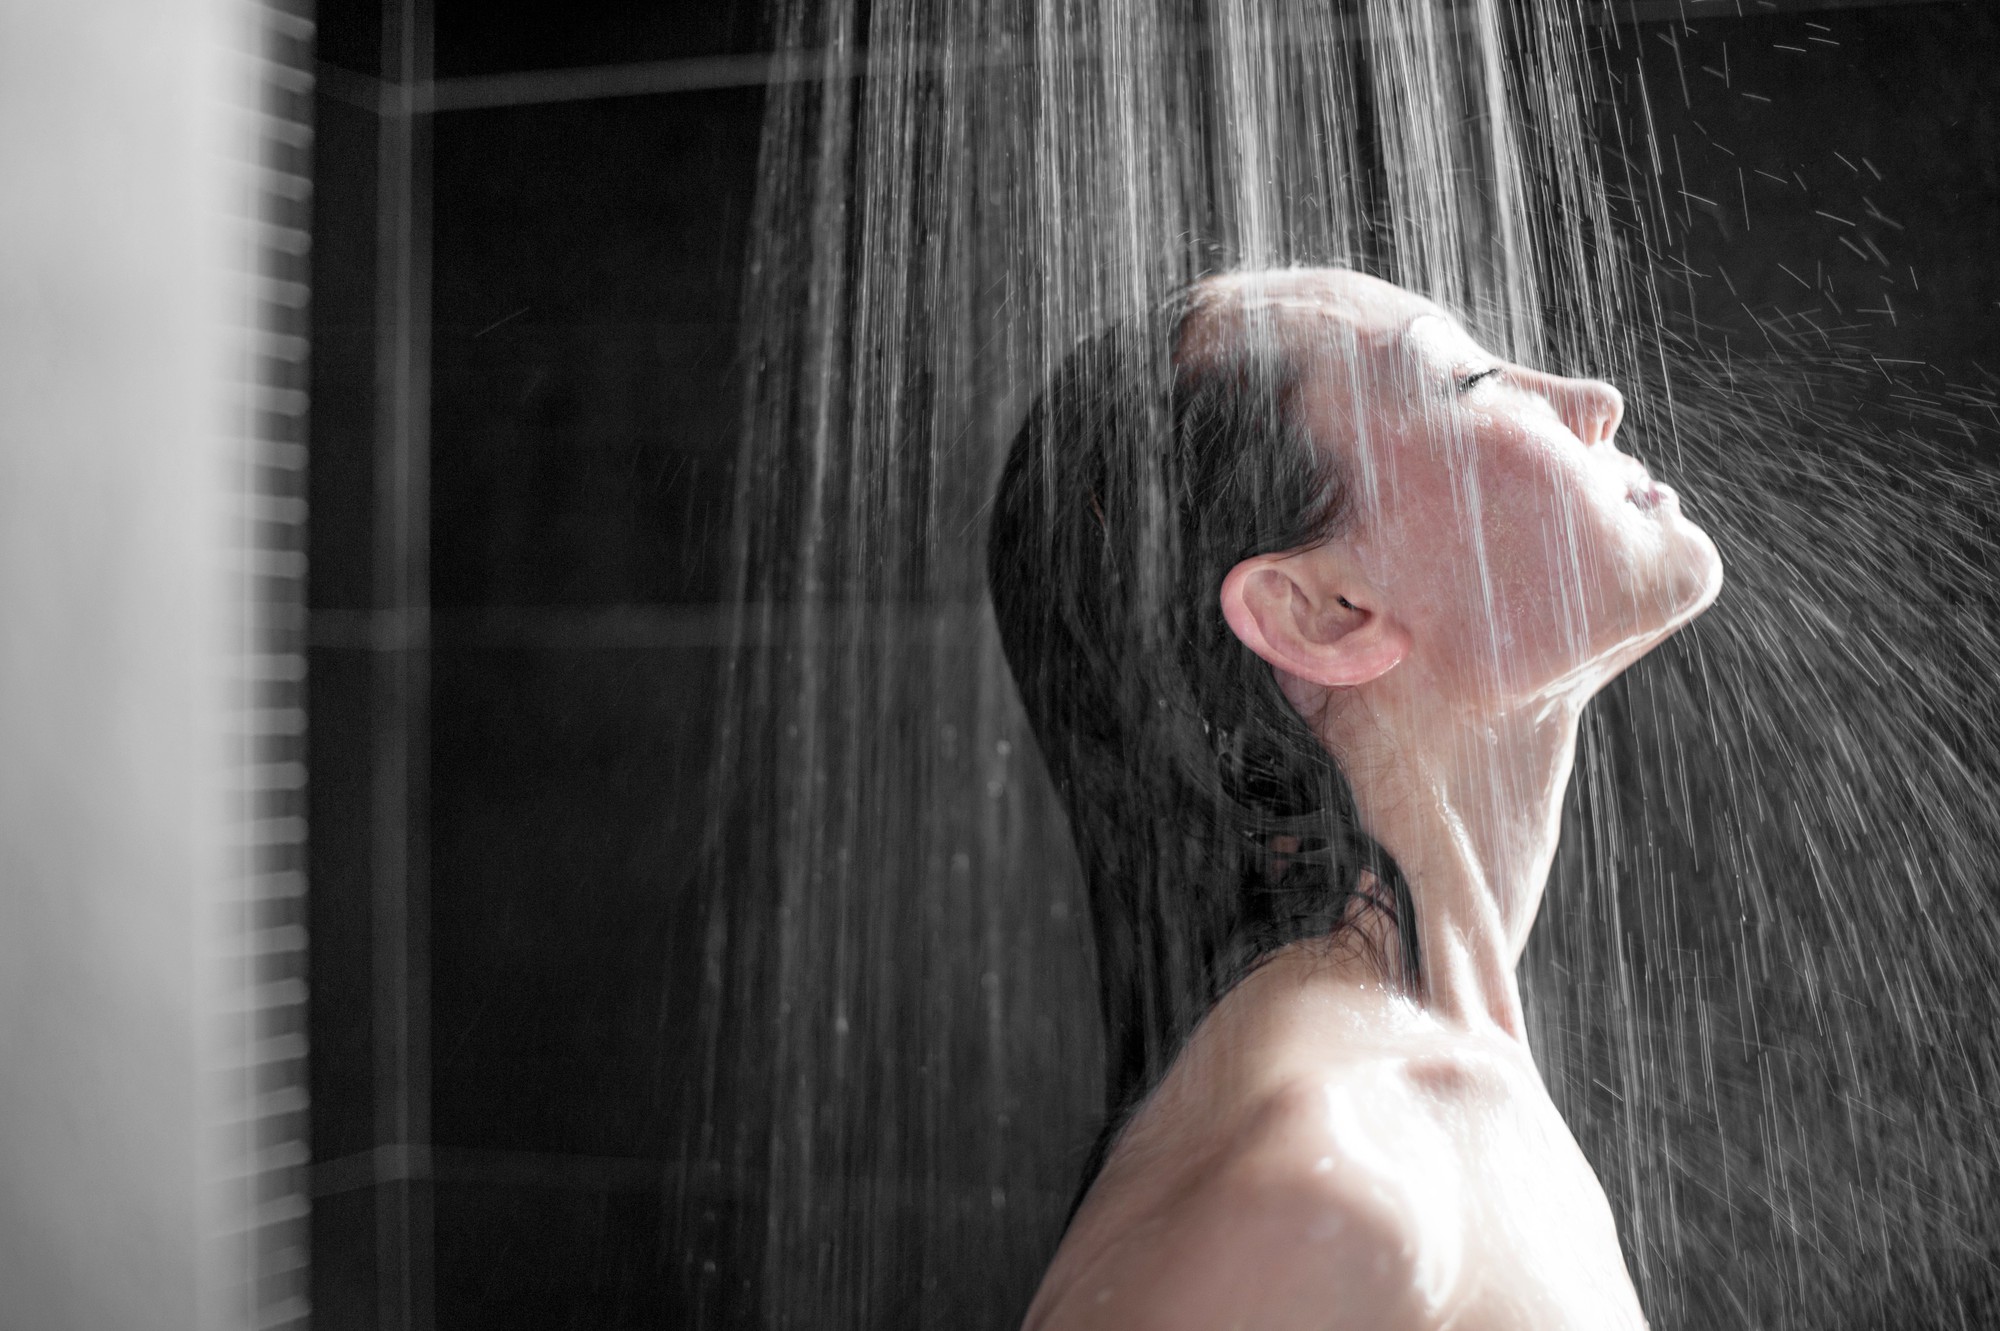 Tuân thủ nguyên tắc tắm trong mùa đông để không gây ảnh hưởng đến sức khoẻ - Ảnh 5.